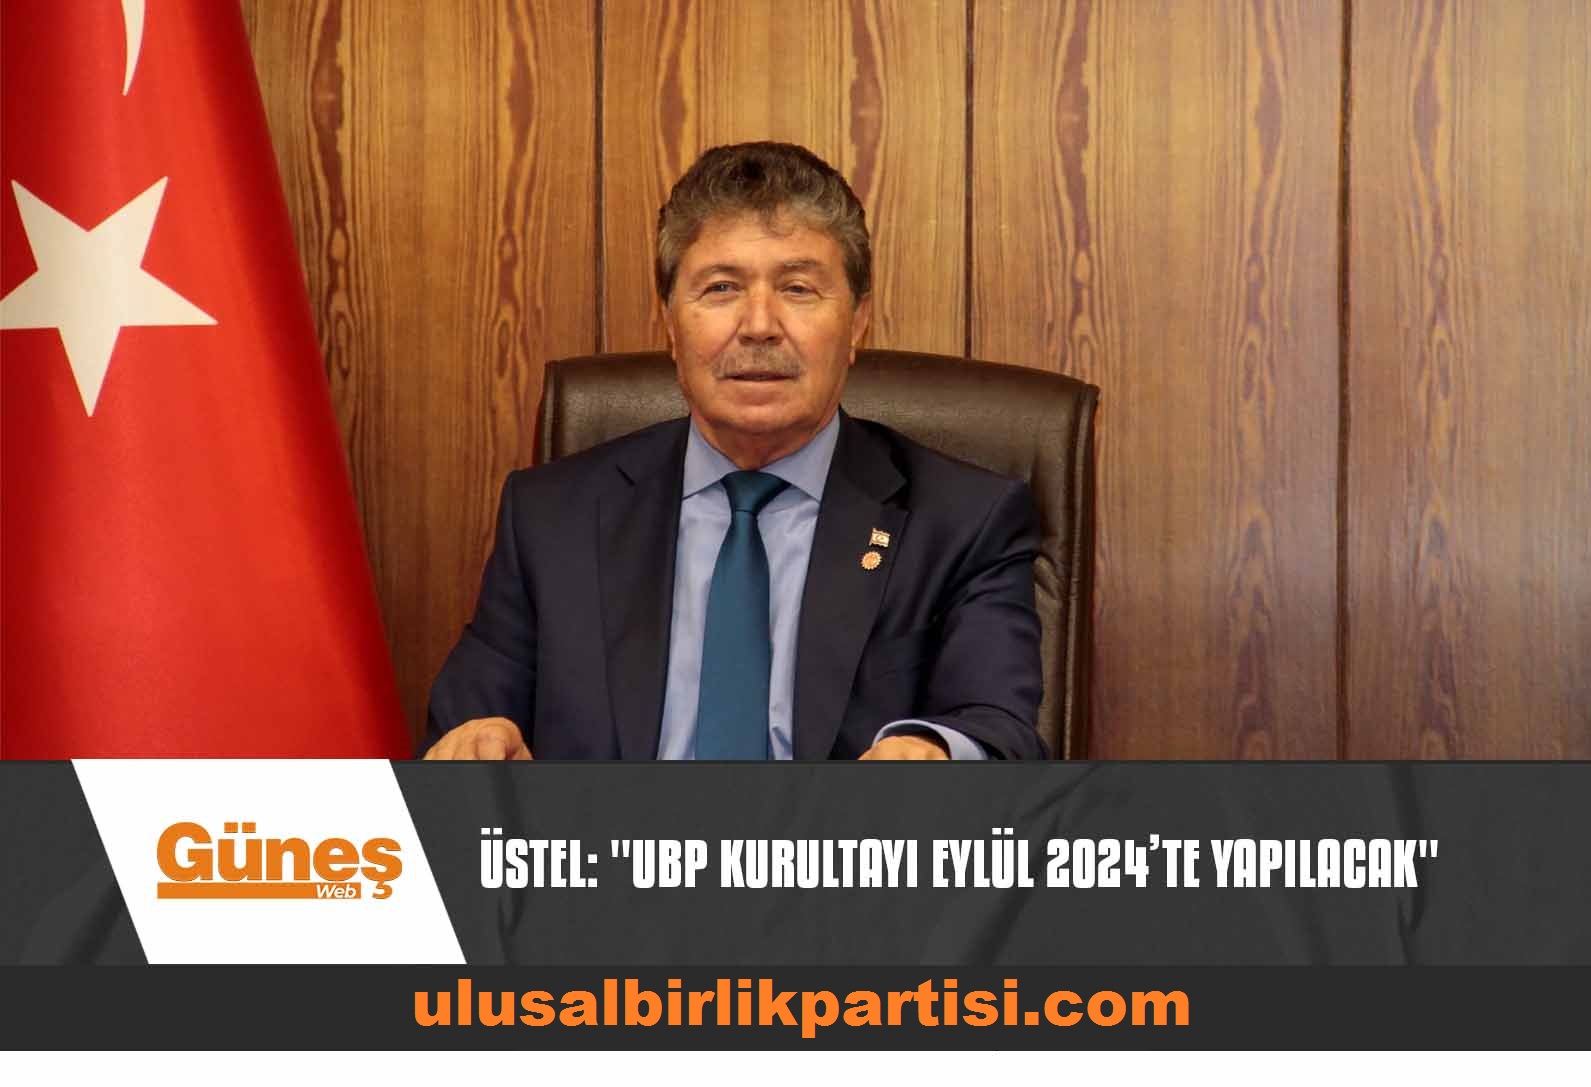 Read more about the article Üstel: “UBP Kurultayı Eylül 2024’te yapılacak”